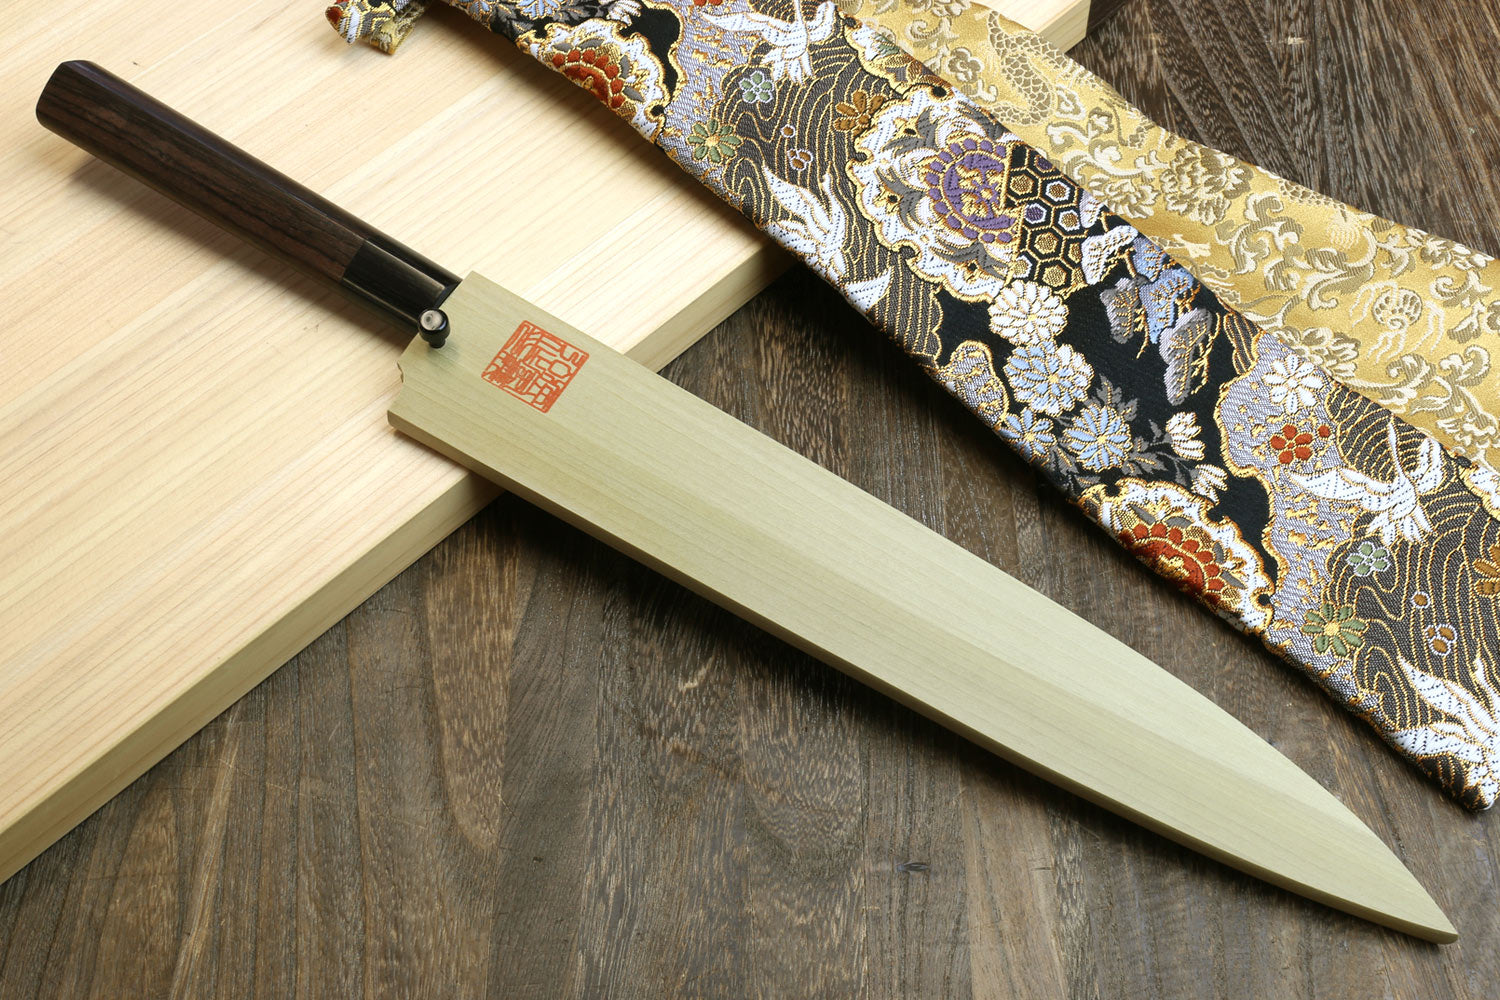 Heavily Used Knife vs Rust Eraser - Japanese Sabitori Usage and Whetstone  Polishing 